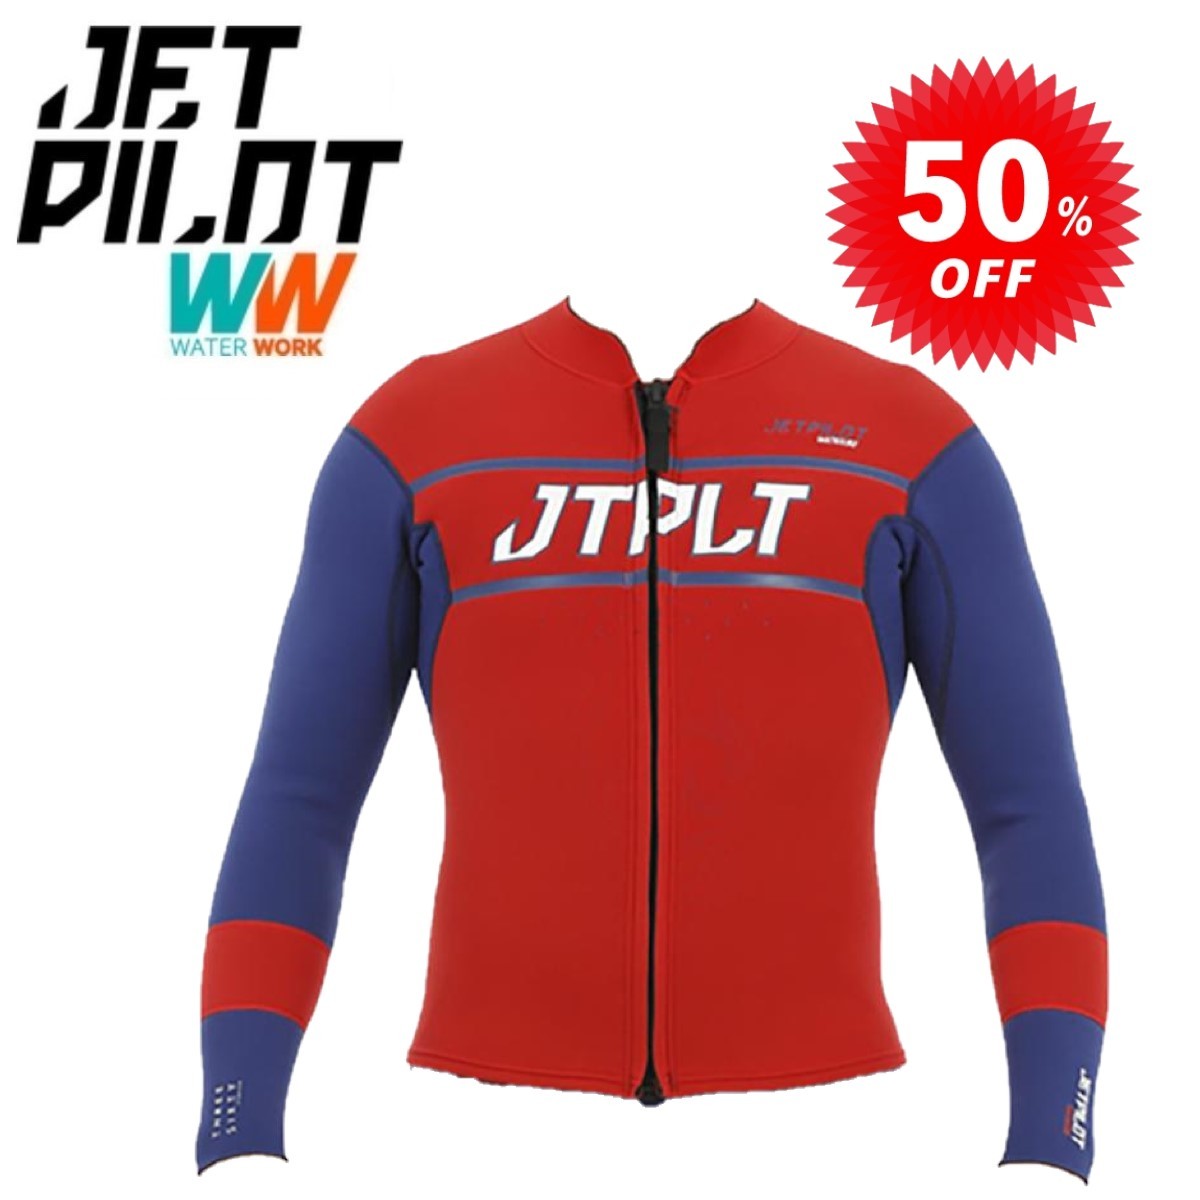 春先取りの セール ウェットスーツ JETPILOT ジェットパイロット 激安50%オフ タッパー XL ネイビー/レッド JA19156 レースジャケット RX 送料無料 ウエア